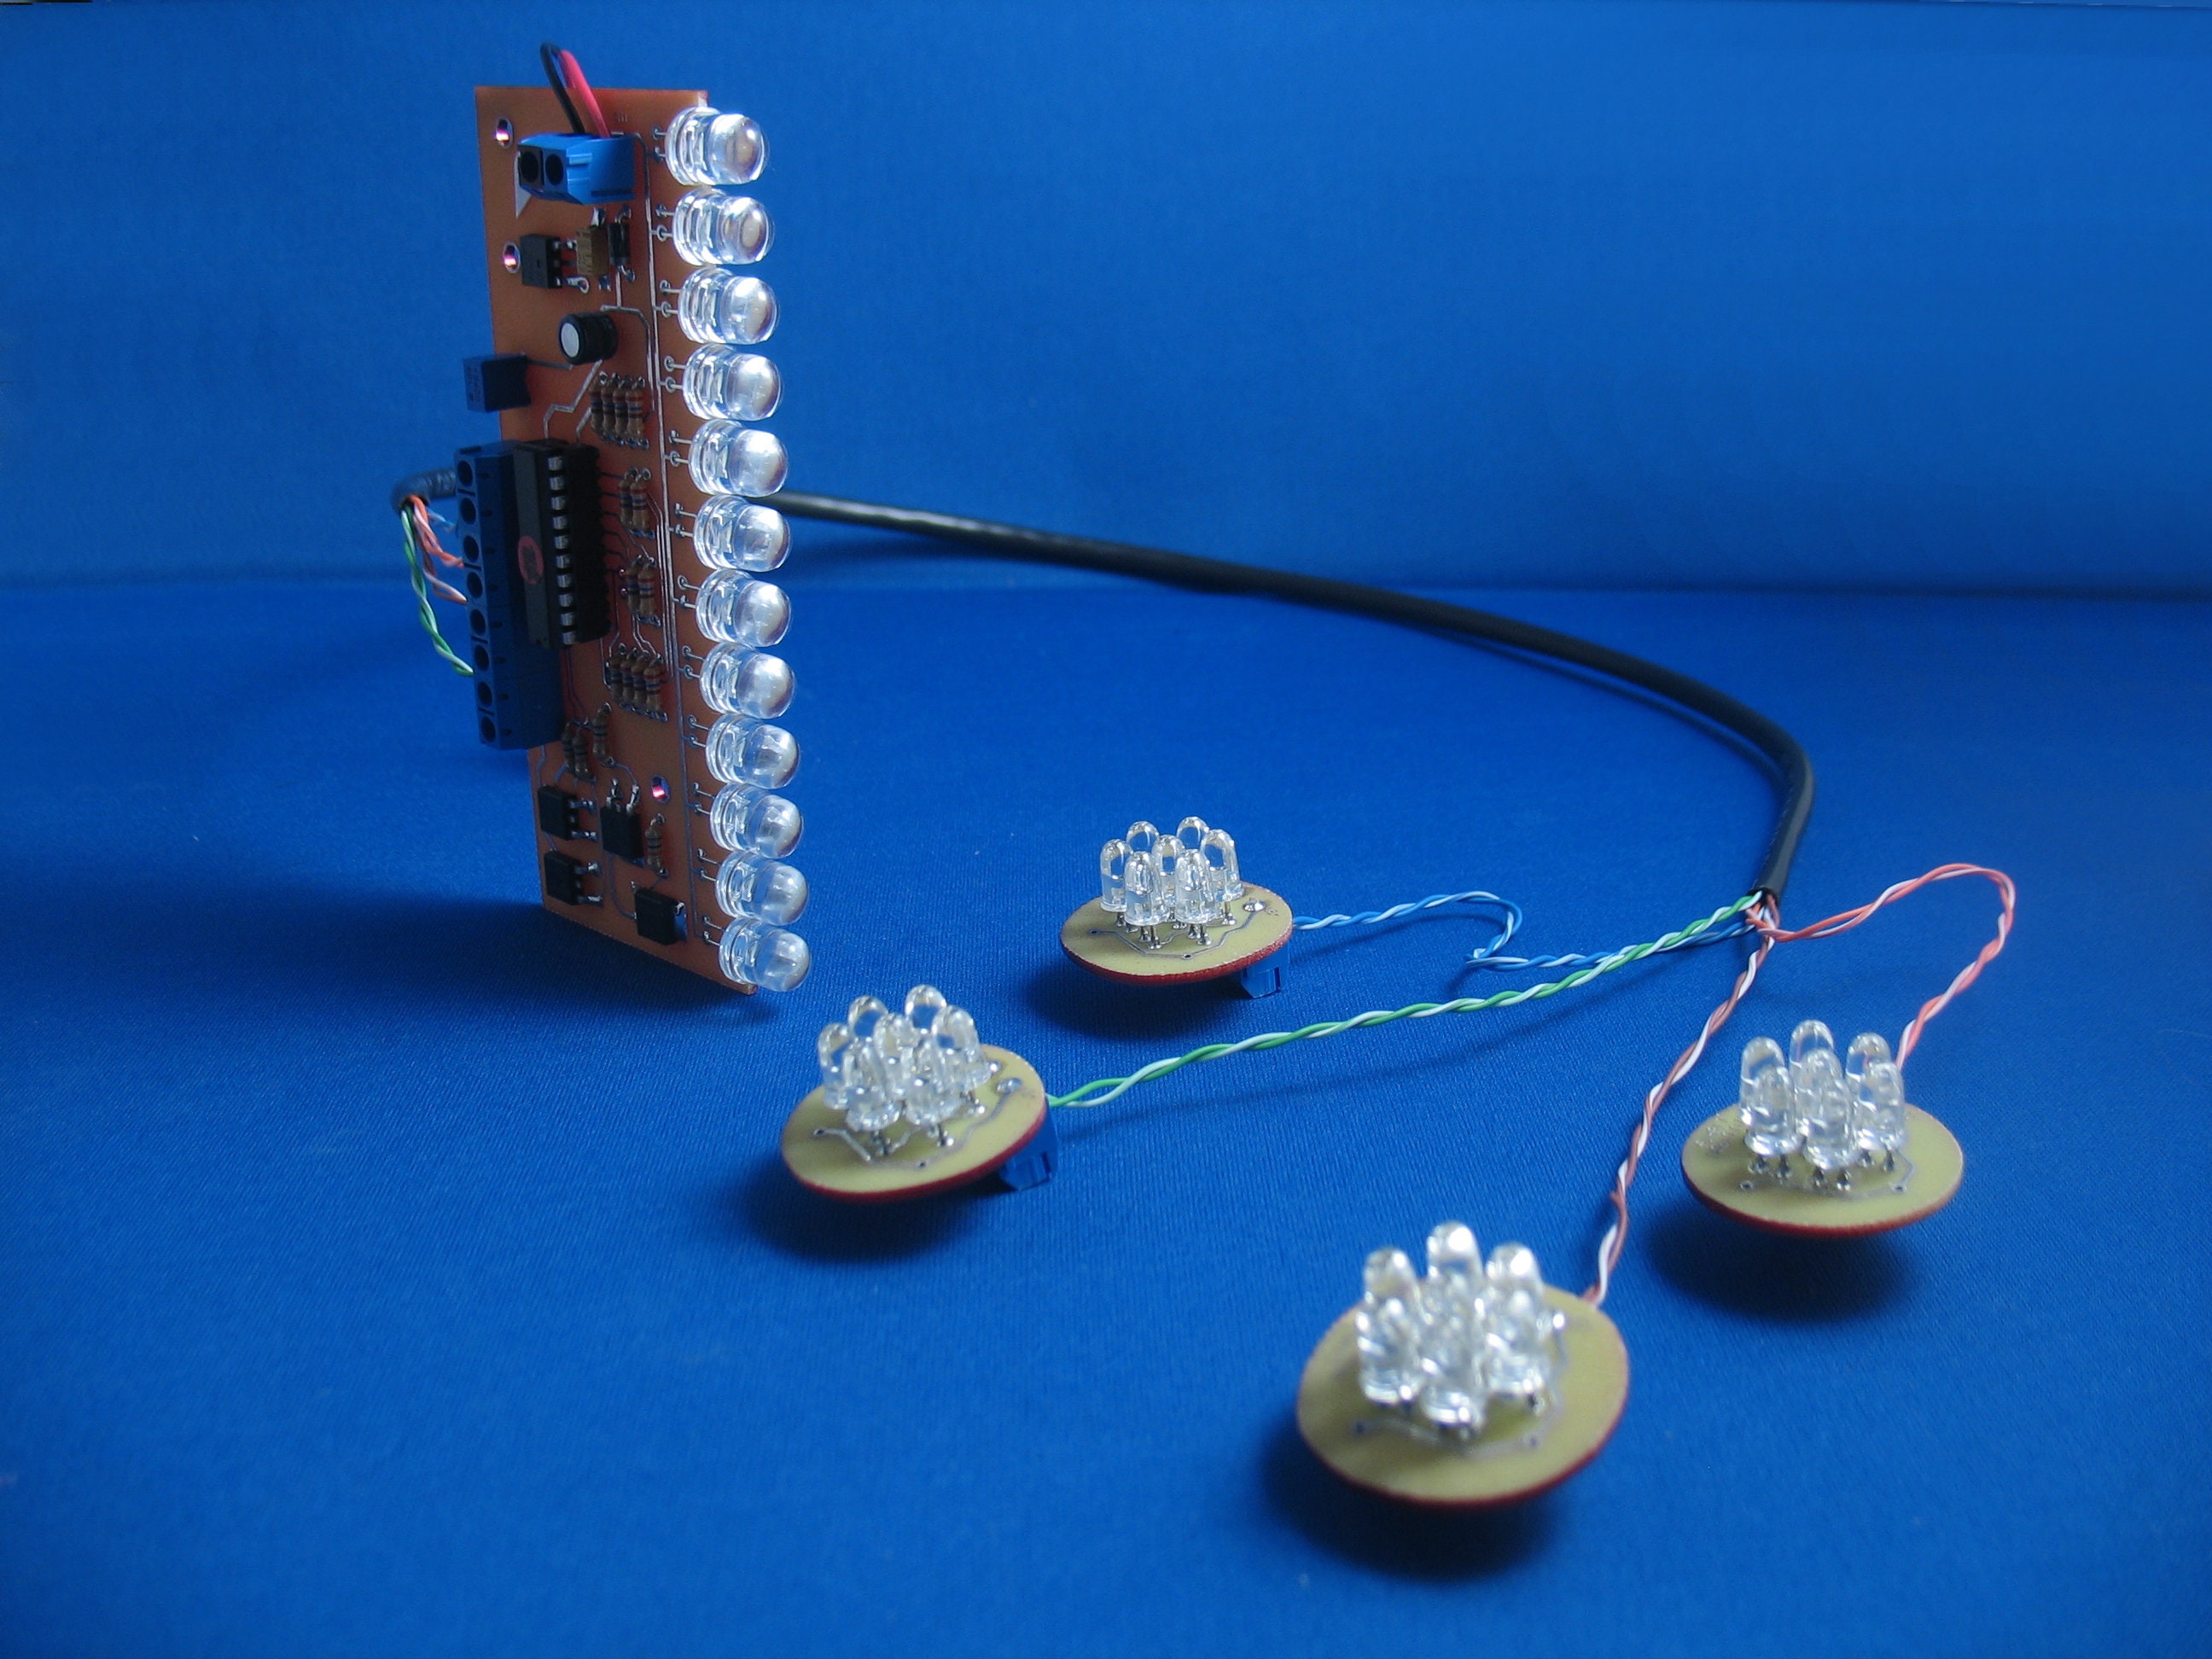 Câble Électronique Composant Résistance Kit Pour Arduino Été